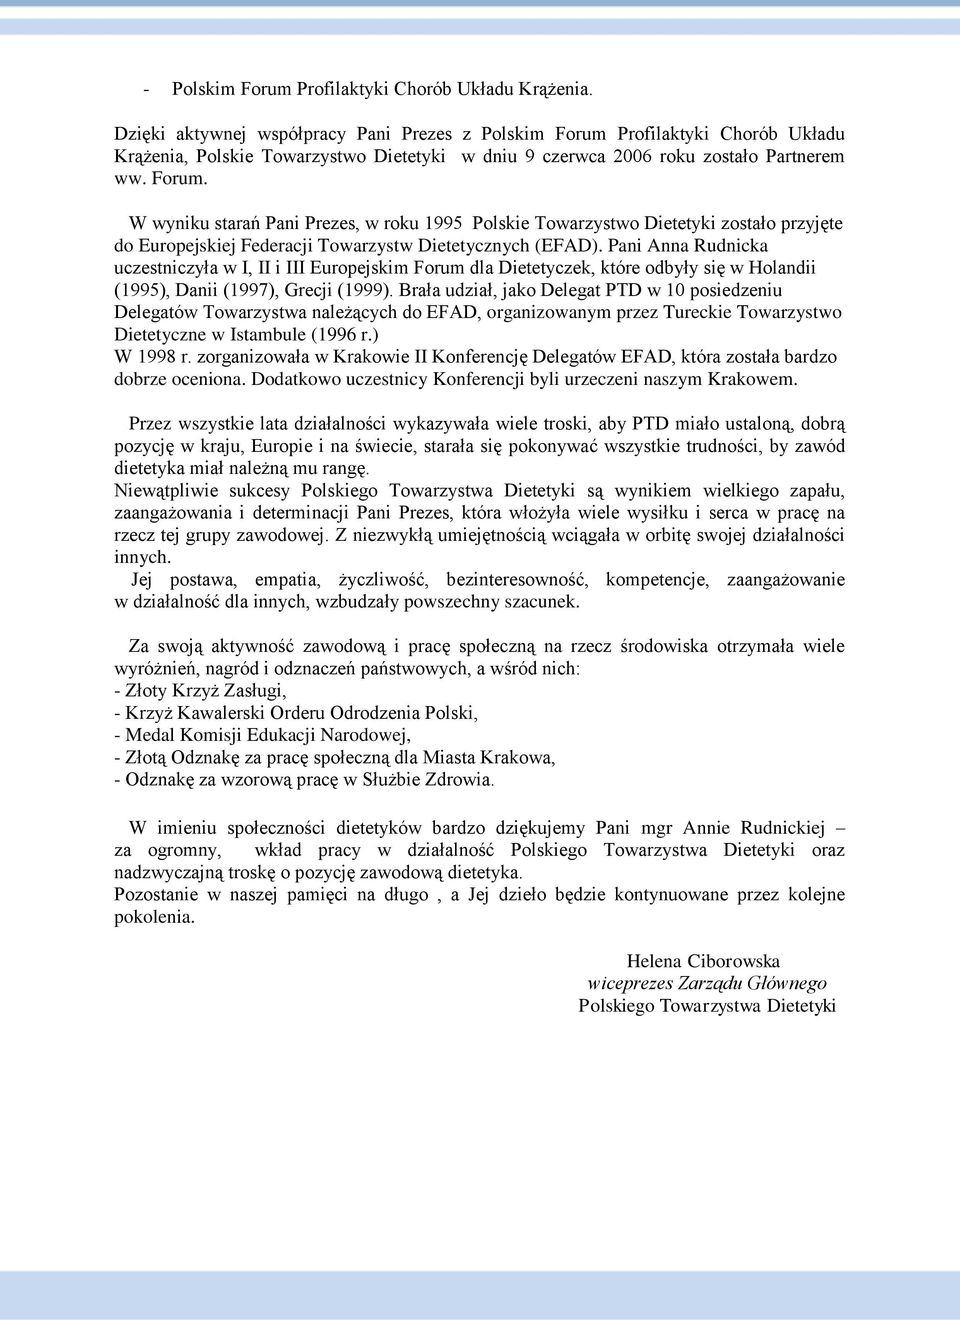 Profilaktyki Chorób Układu Krążenia, Polskie Towarzystwo Dietetyki w dniu 9 czerwca 2006 roku zostało Partnerem ww. Forum.